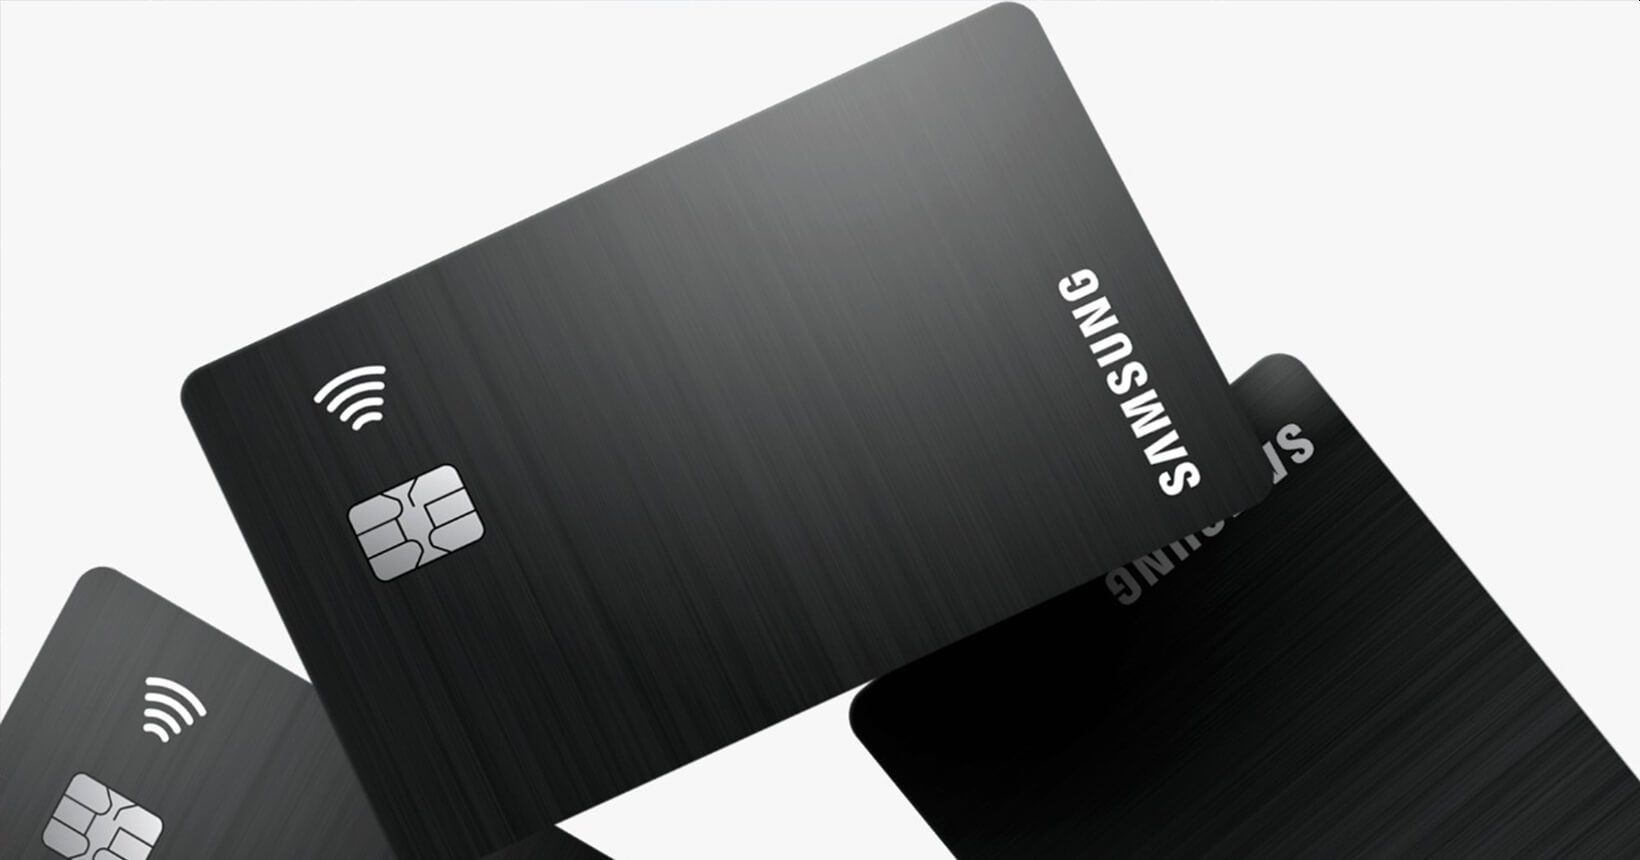 Cartão Samsung Itaucard promete anuidade zero e compras em até 21x